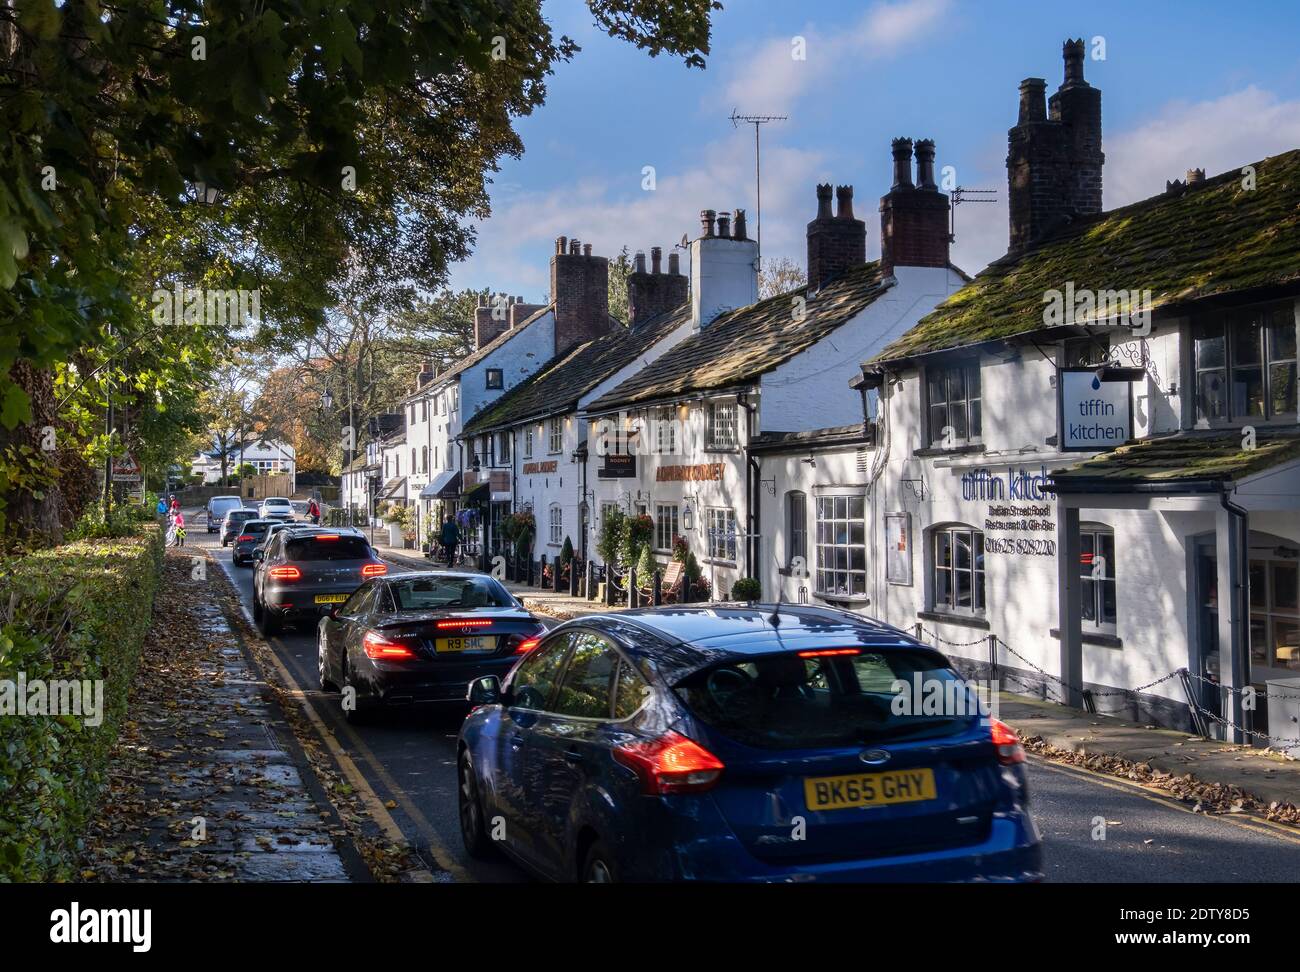 Trafic occupé dans Prestbury Village en automne, Prestbury, Cheshire, Angleterre, Royaume-Uni Banque D'Images